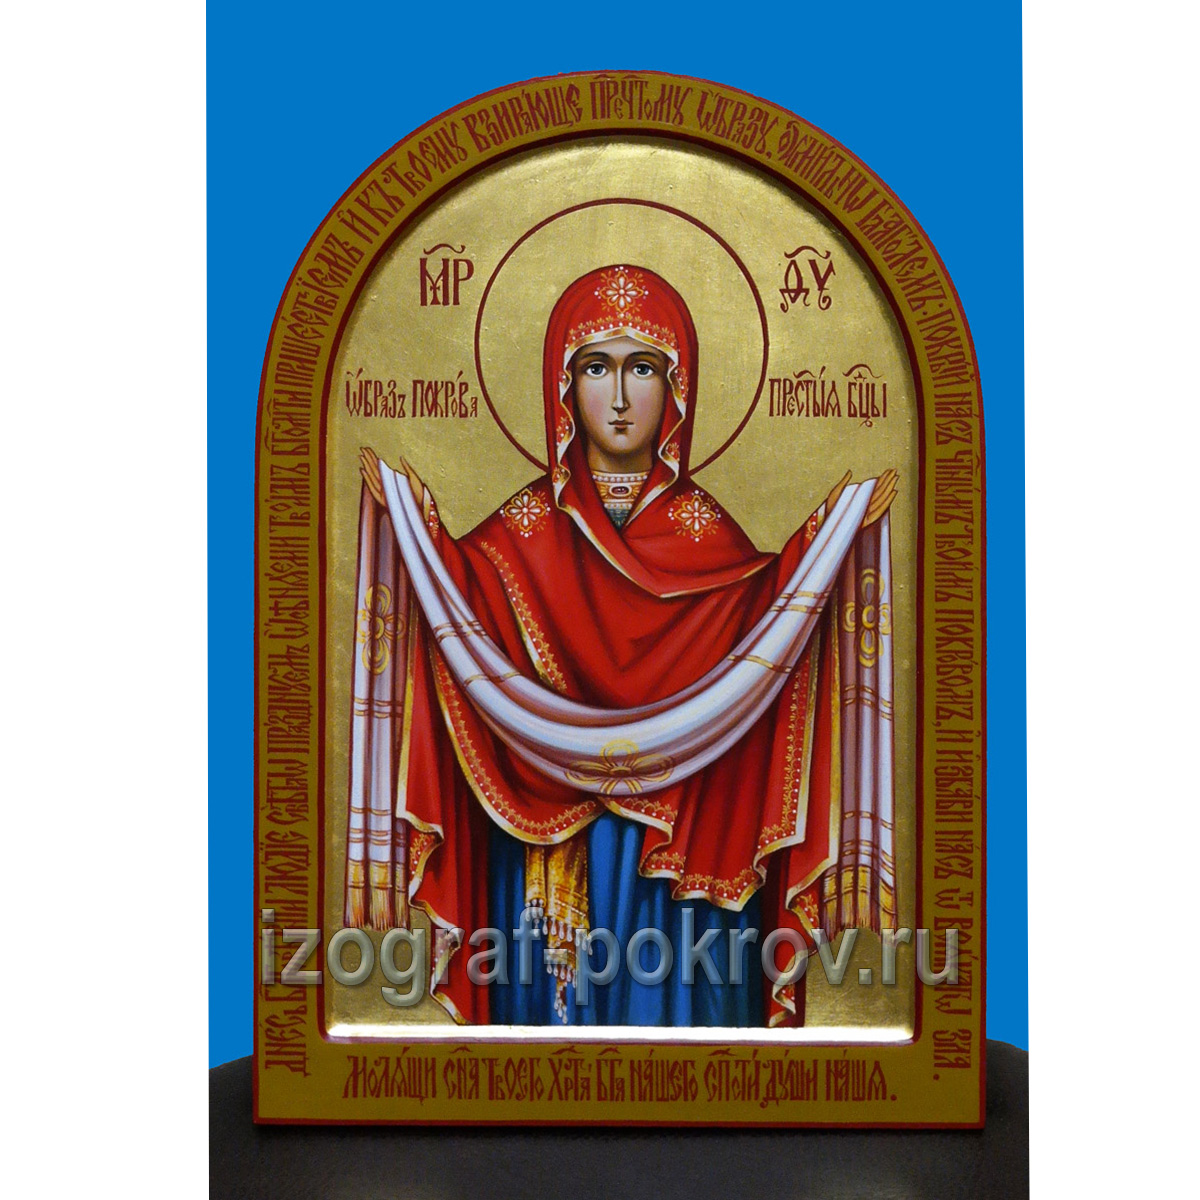 Рукописная икона Покрова Пресвятой Богородицы, написанная под заказ в иконописной мастерской Покров